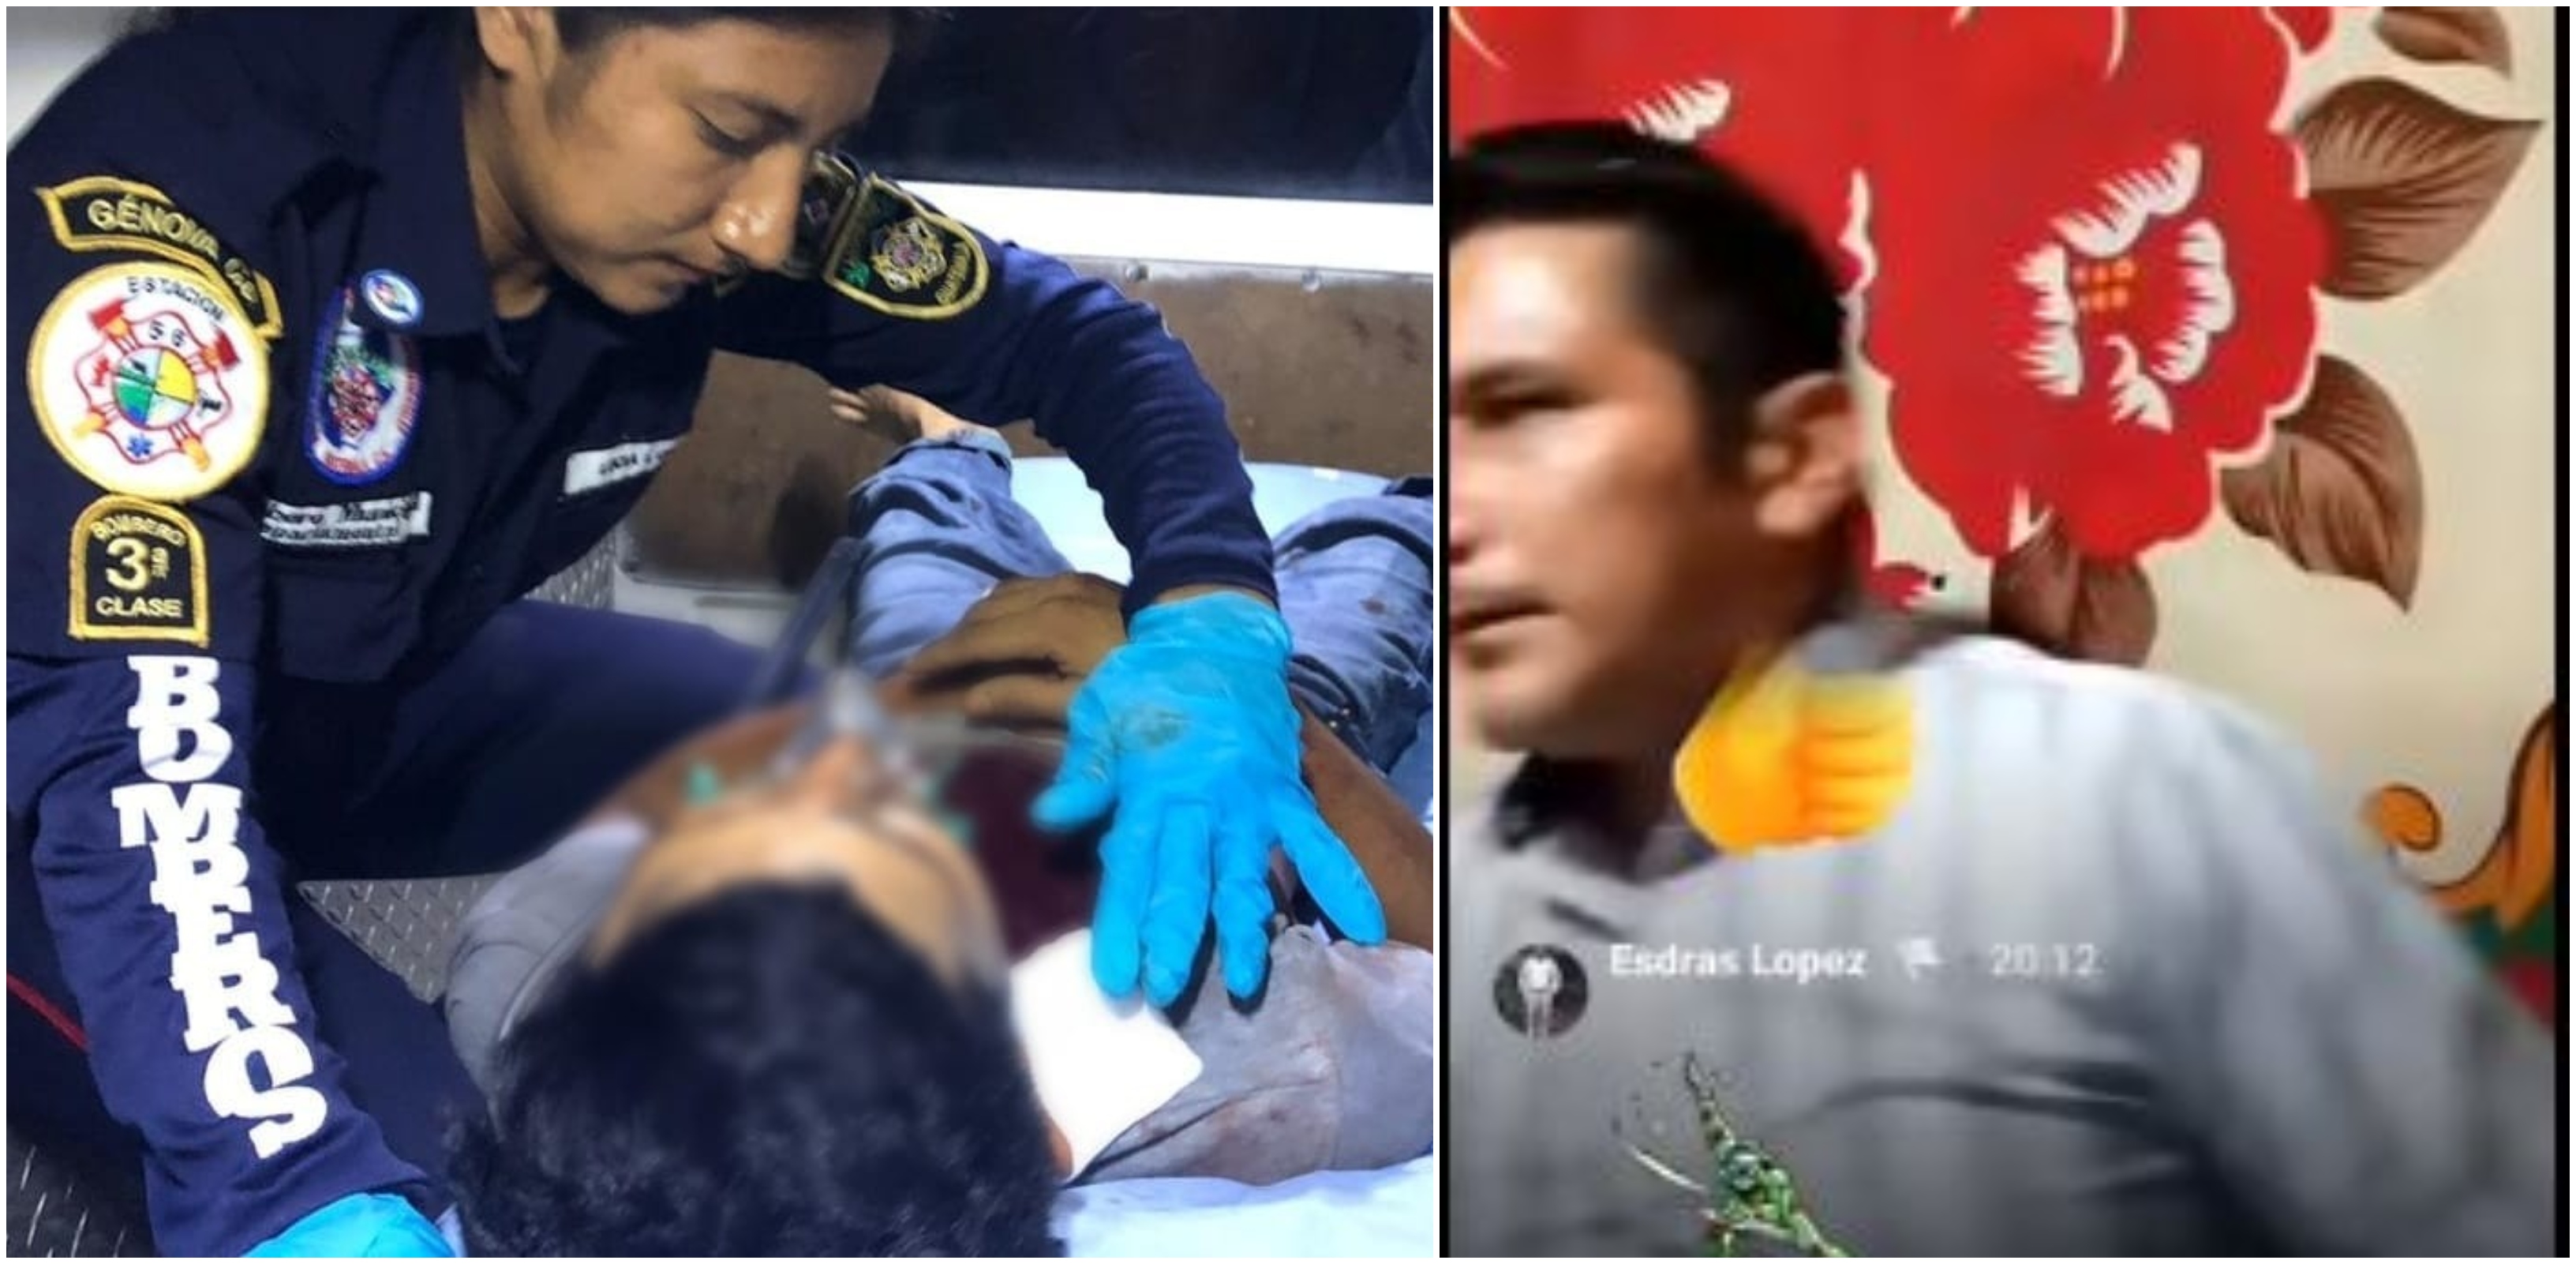 Sujetos armados dispararon contra el hijo de un pastor evangélico en Flores Costa Cuca, Quetzaltenango el 23 de septiembre. Una transmisión en vivo registró los momentos de angustia de la familia. (Foto Prensa Libre: BMD y Facebook).